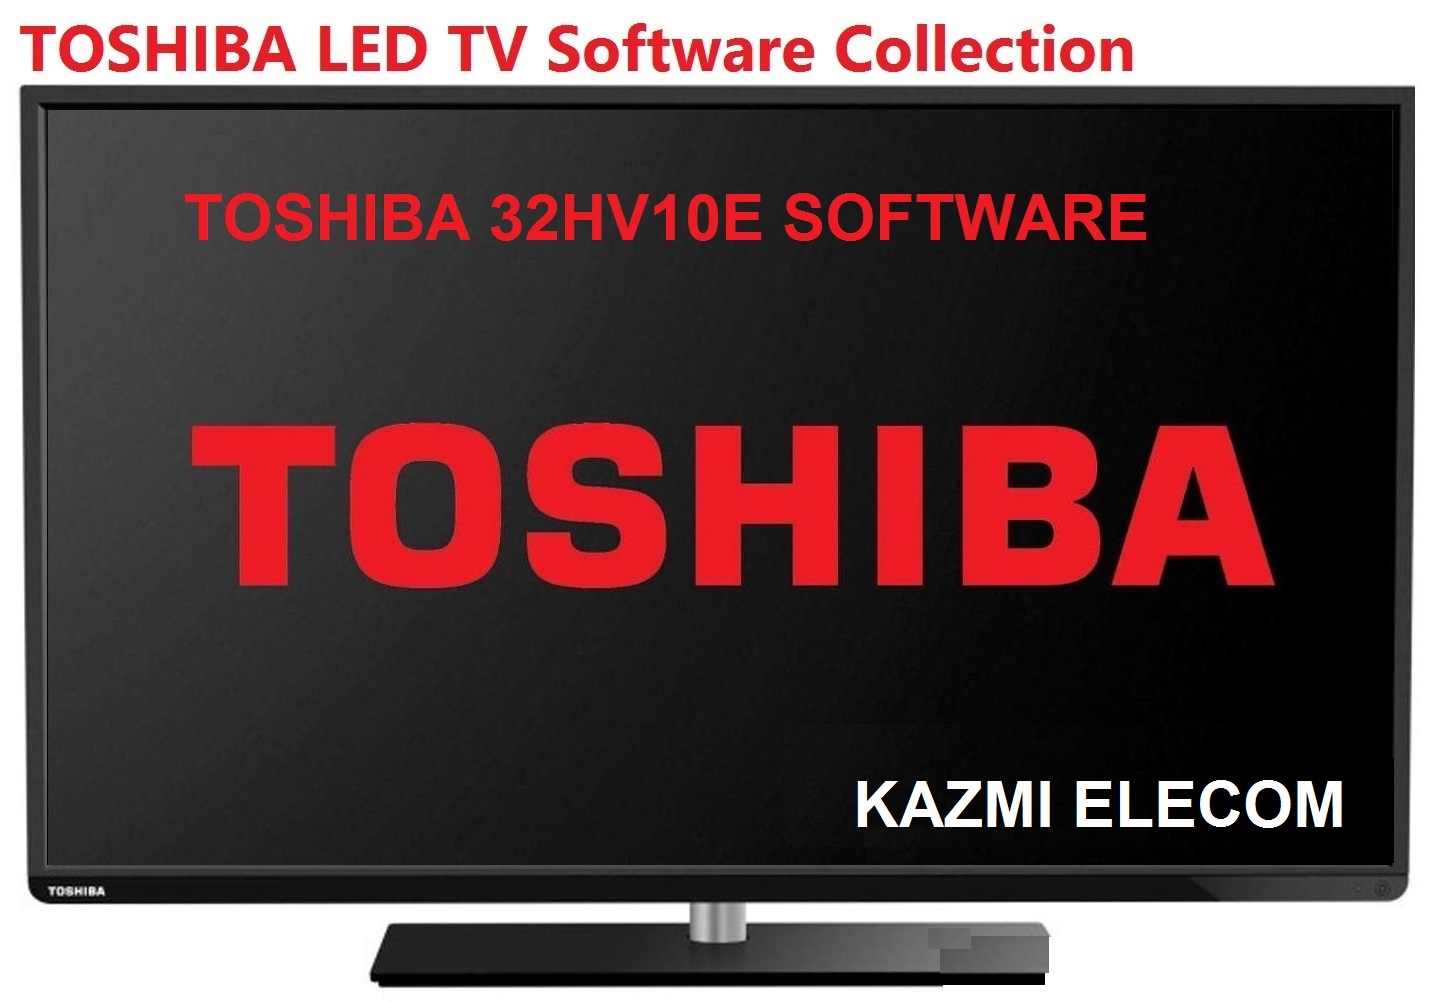 Toshiba 32Hv10E